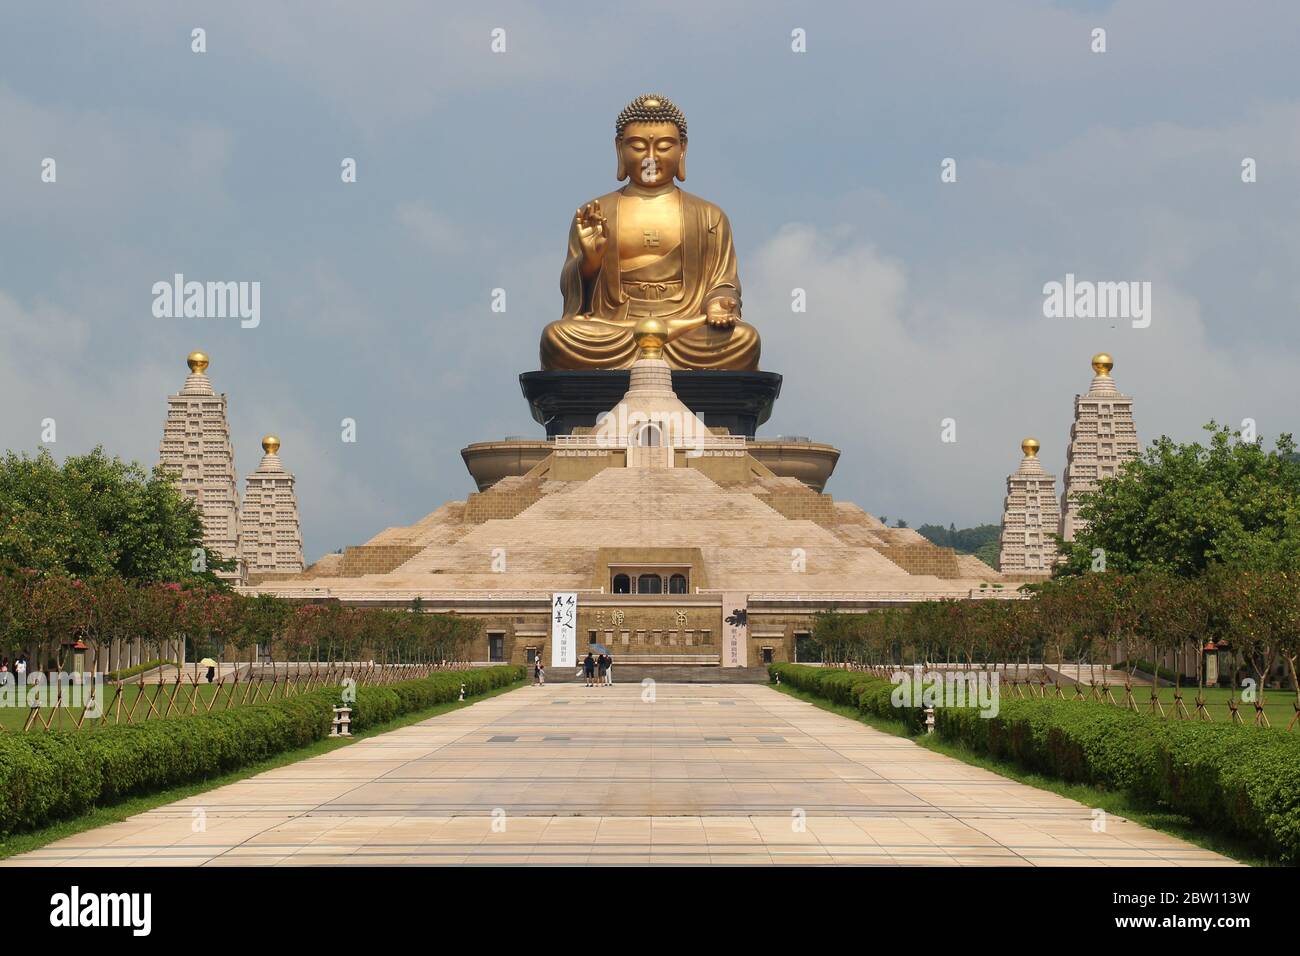 Le monastère de FO Guang Shan, un Bouddha géant de prière en or au sommet d'un musée de pyramide en pierre. Kaohsiung, Taïwan Banque D'Images